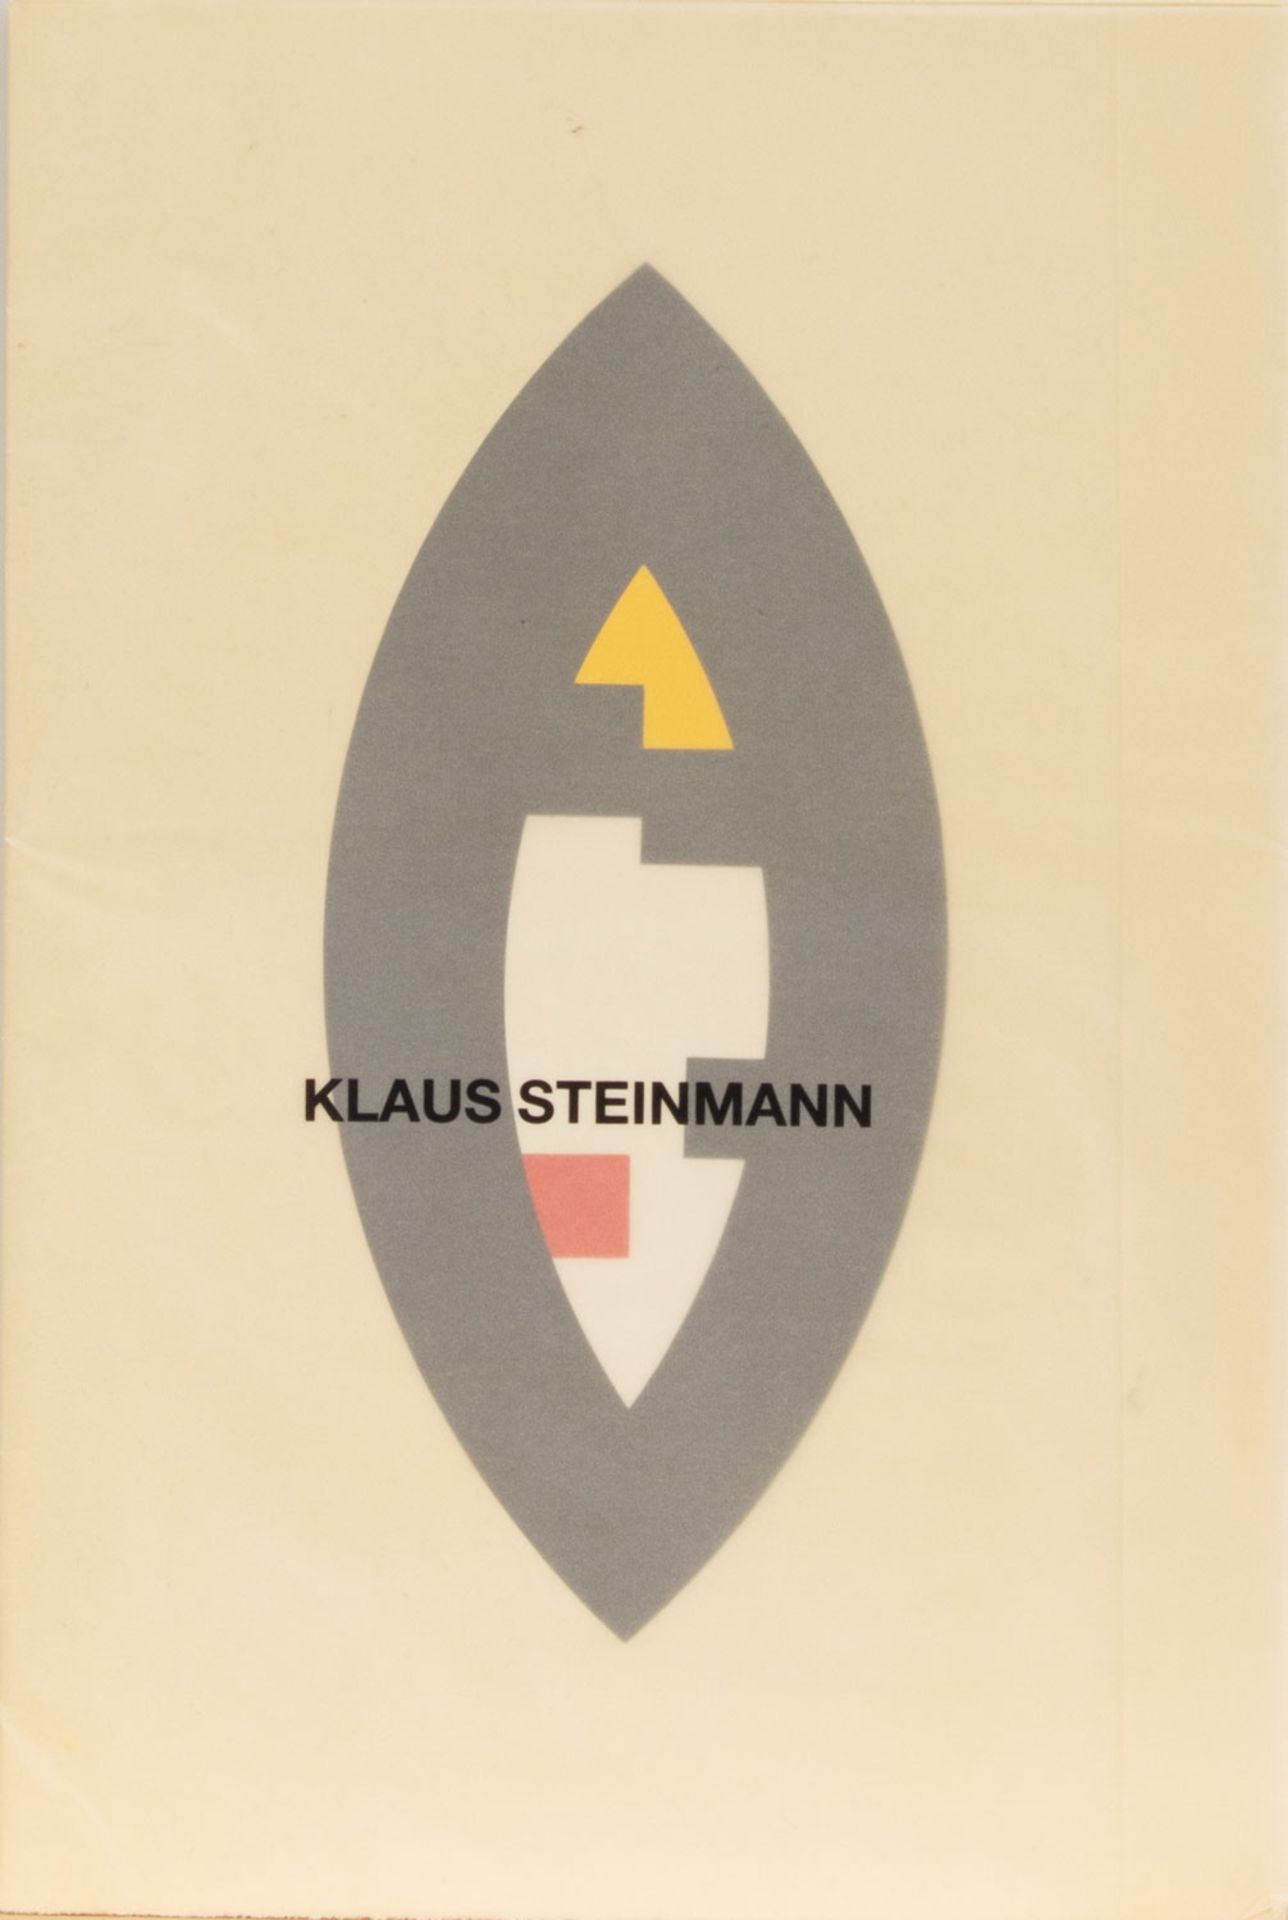 Klaus Steinmann